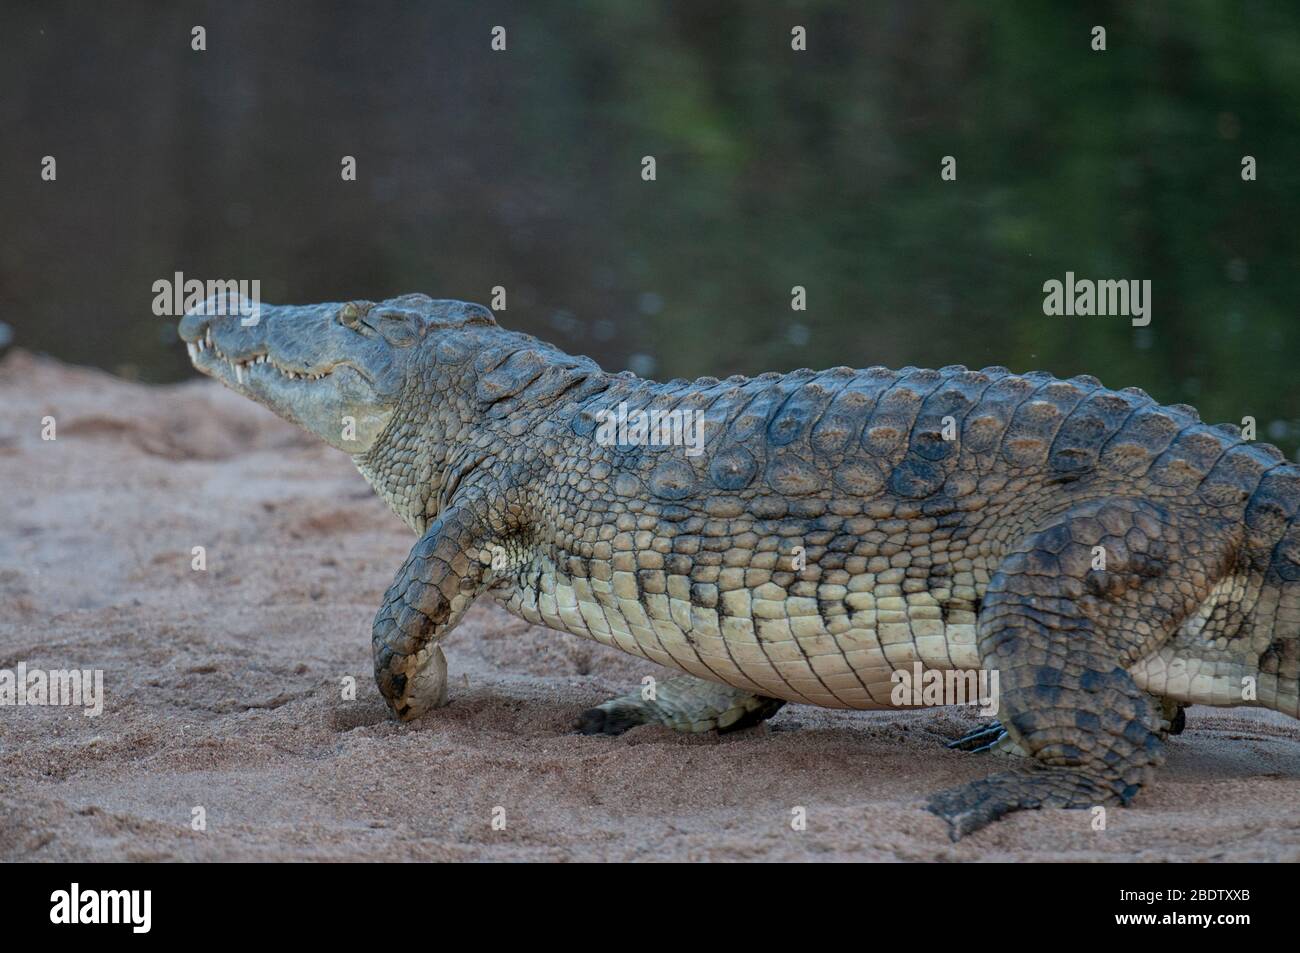 Crocodile du Nil, Crocodylus niloticus, marche sur le banc de sable au bord du fleuve, Parc national Kruger, province de Mpumalanga, Afrique du Sud, Afrique Banque D'Images